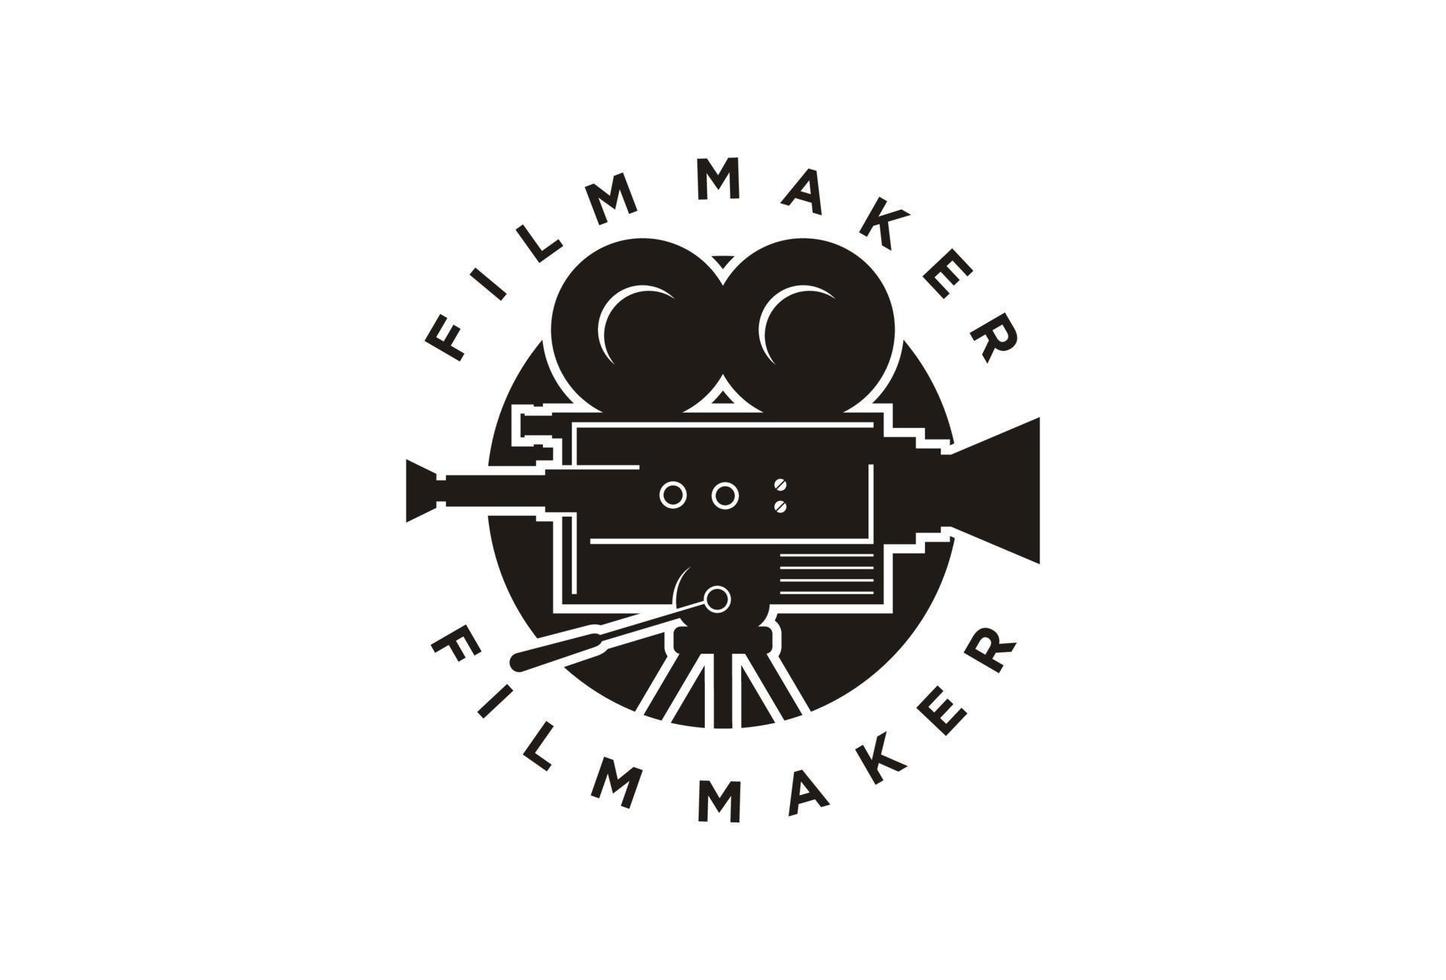 Vintage-Videokamera-Logo-Design für die Filmkino-Produktion vektor